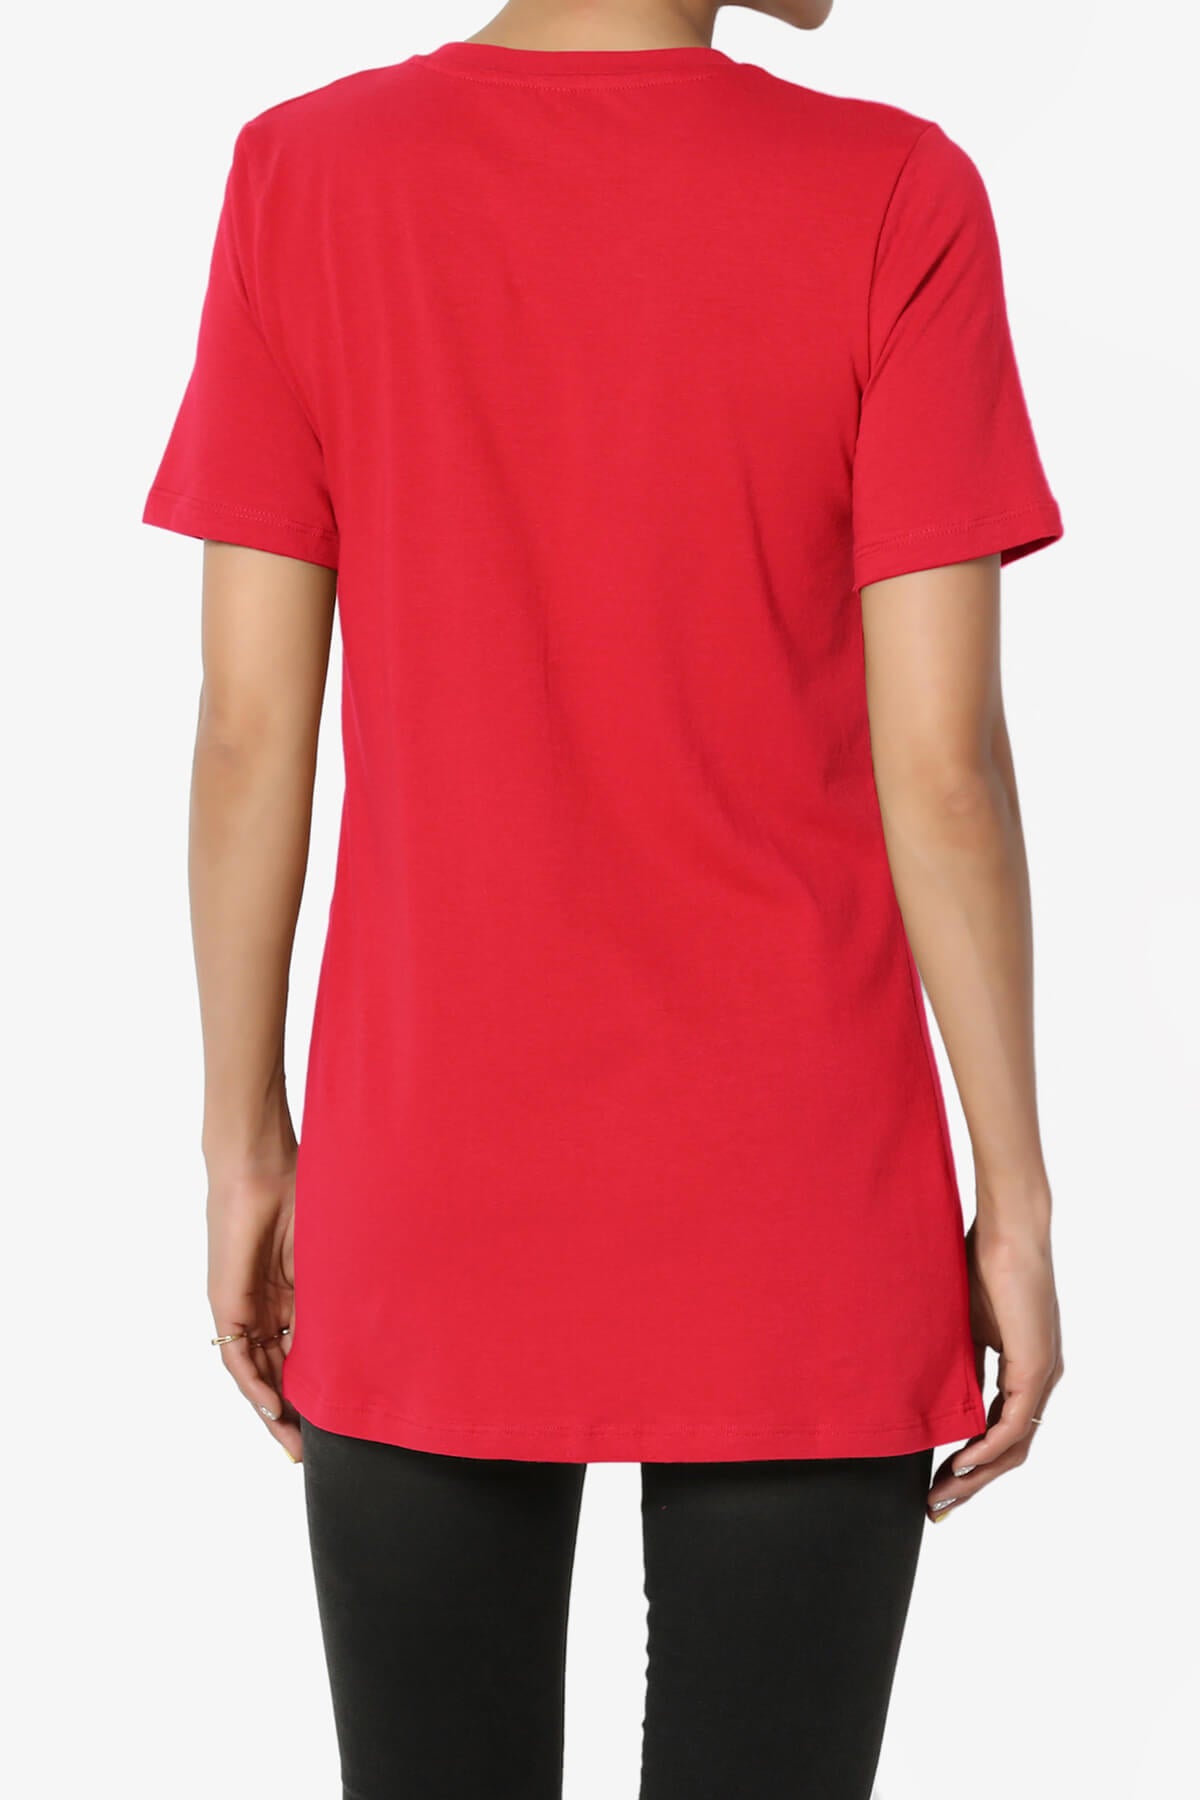 Elora Crew Neck Short Sleeve T-Shirt RED_2